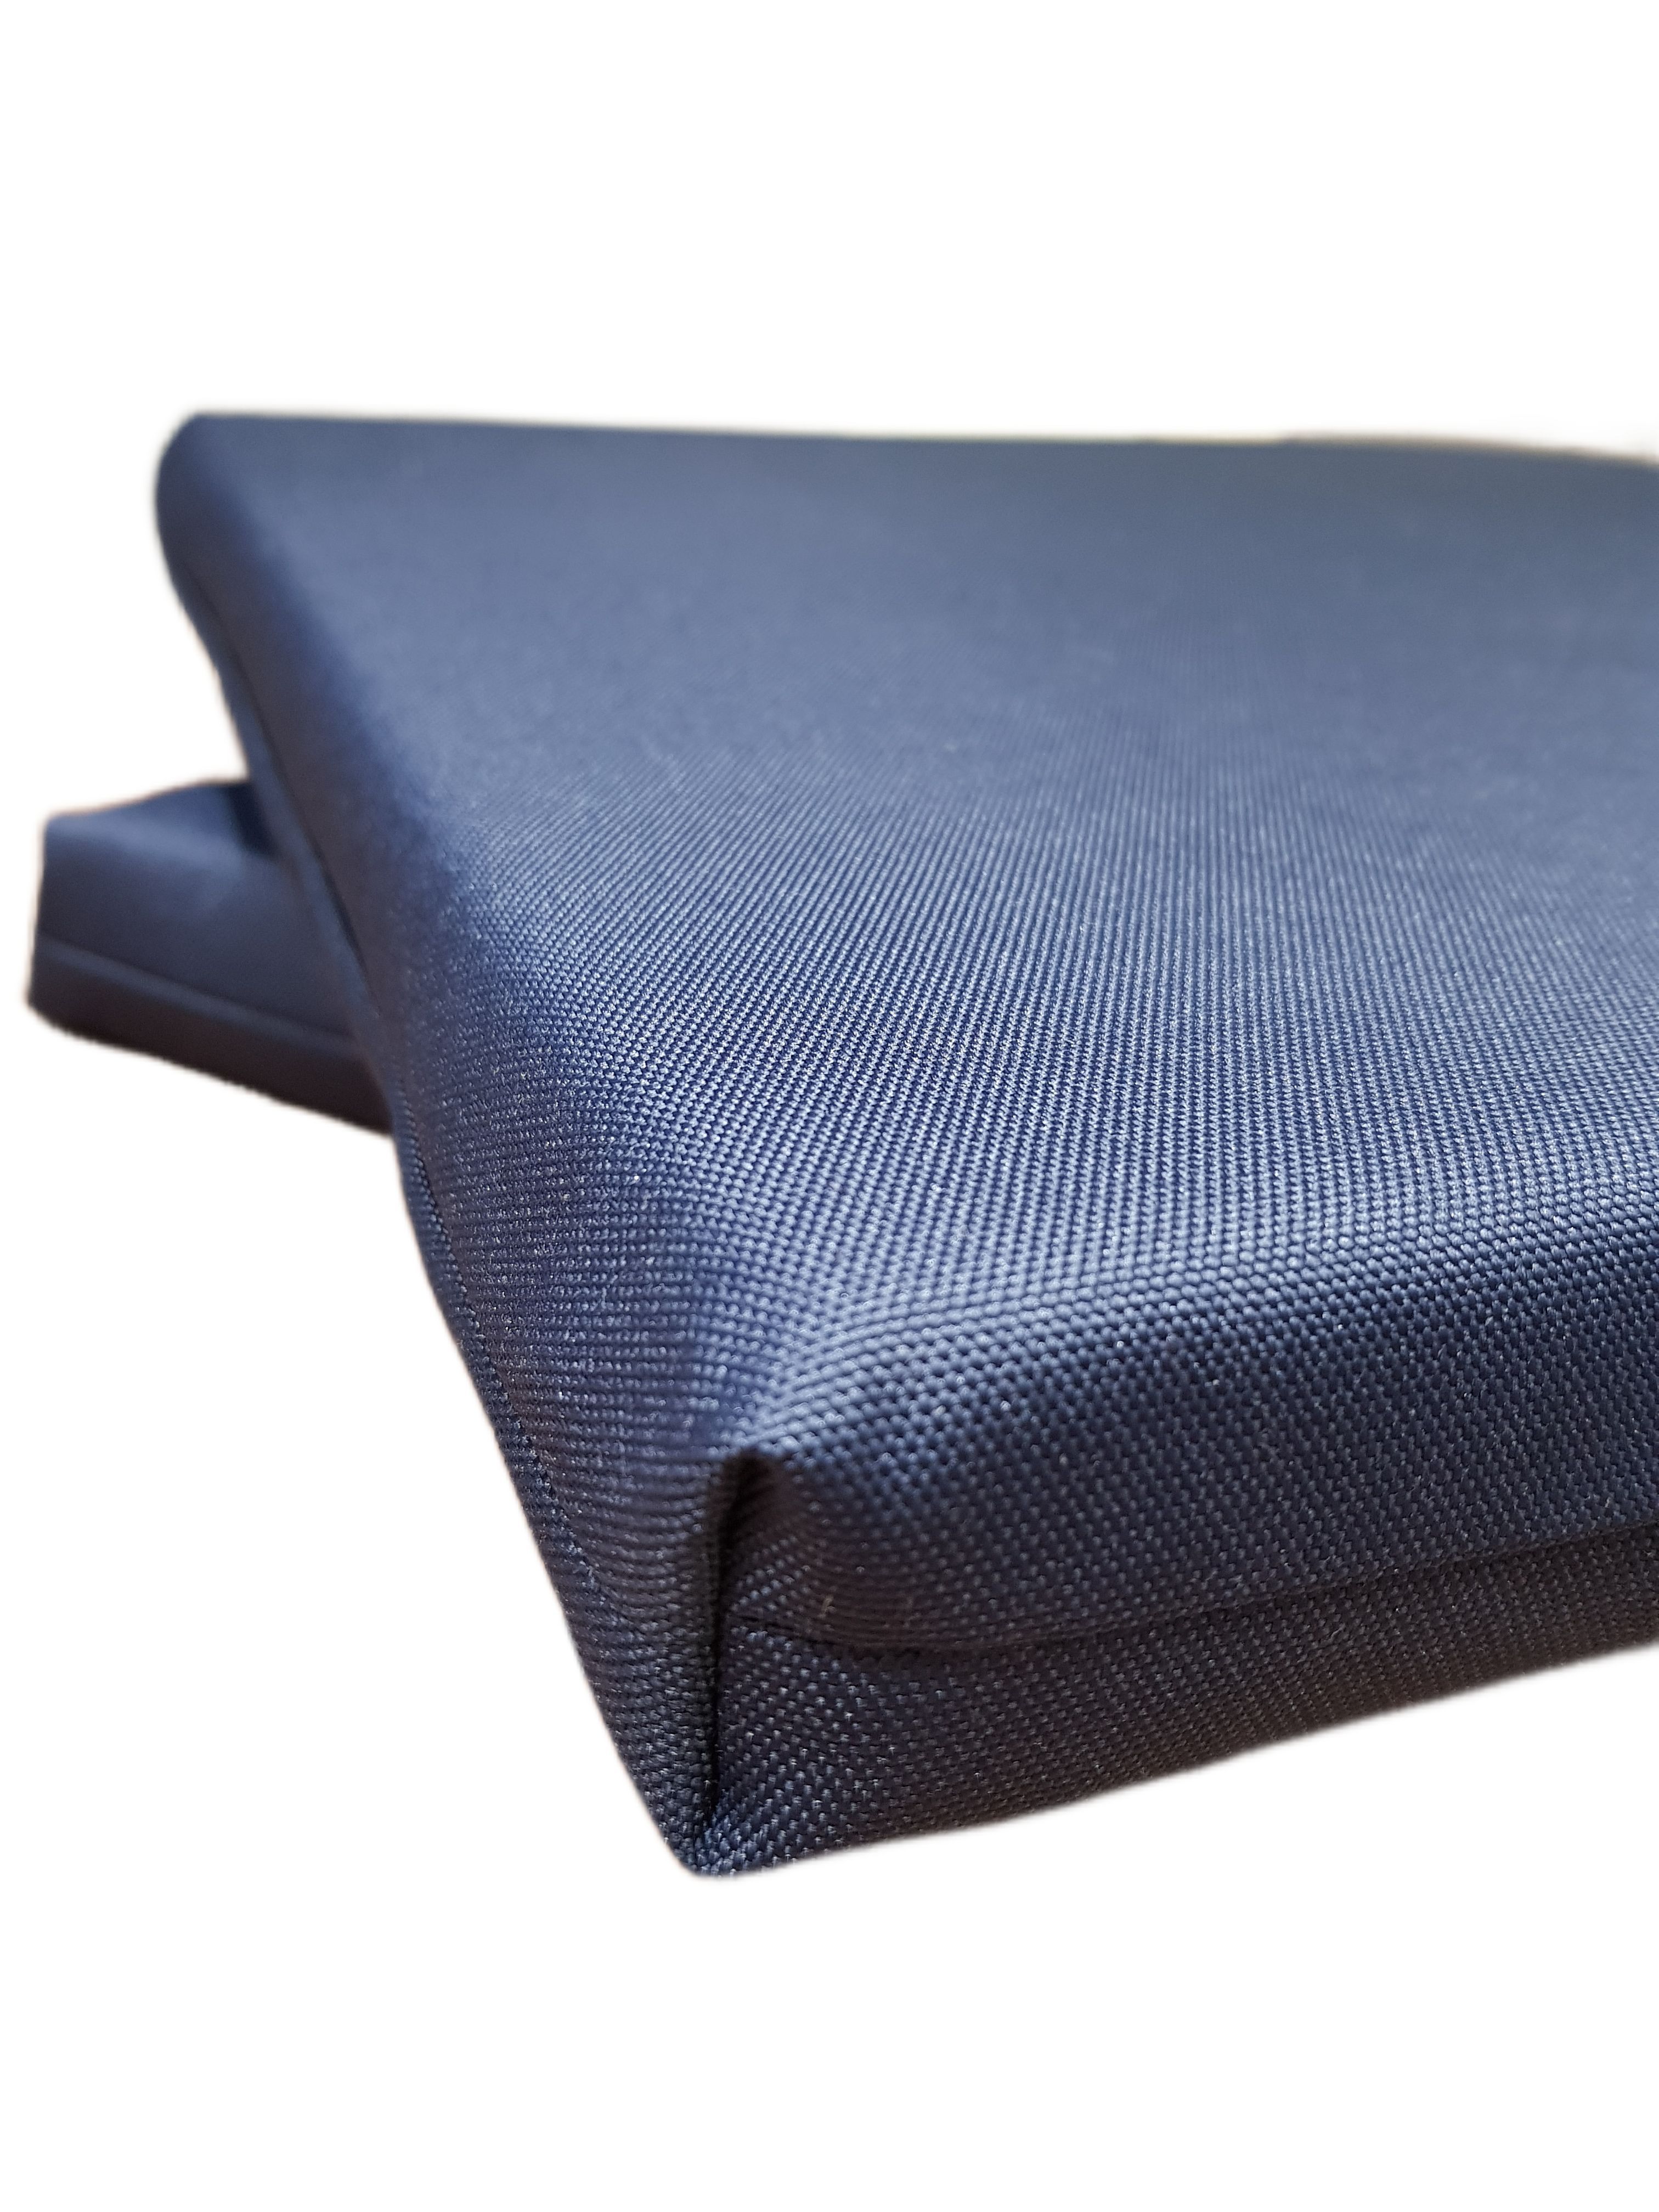 Комплект подушек для 2-х местного дивана Альтернатива RT0078 54х49х5 см цвет темно-синий